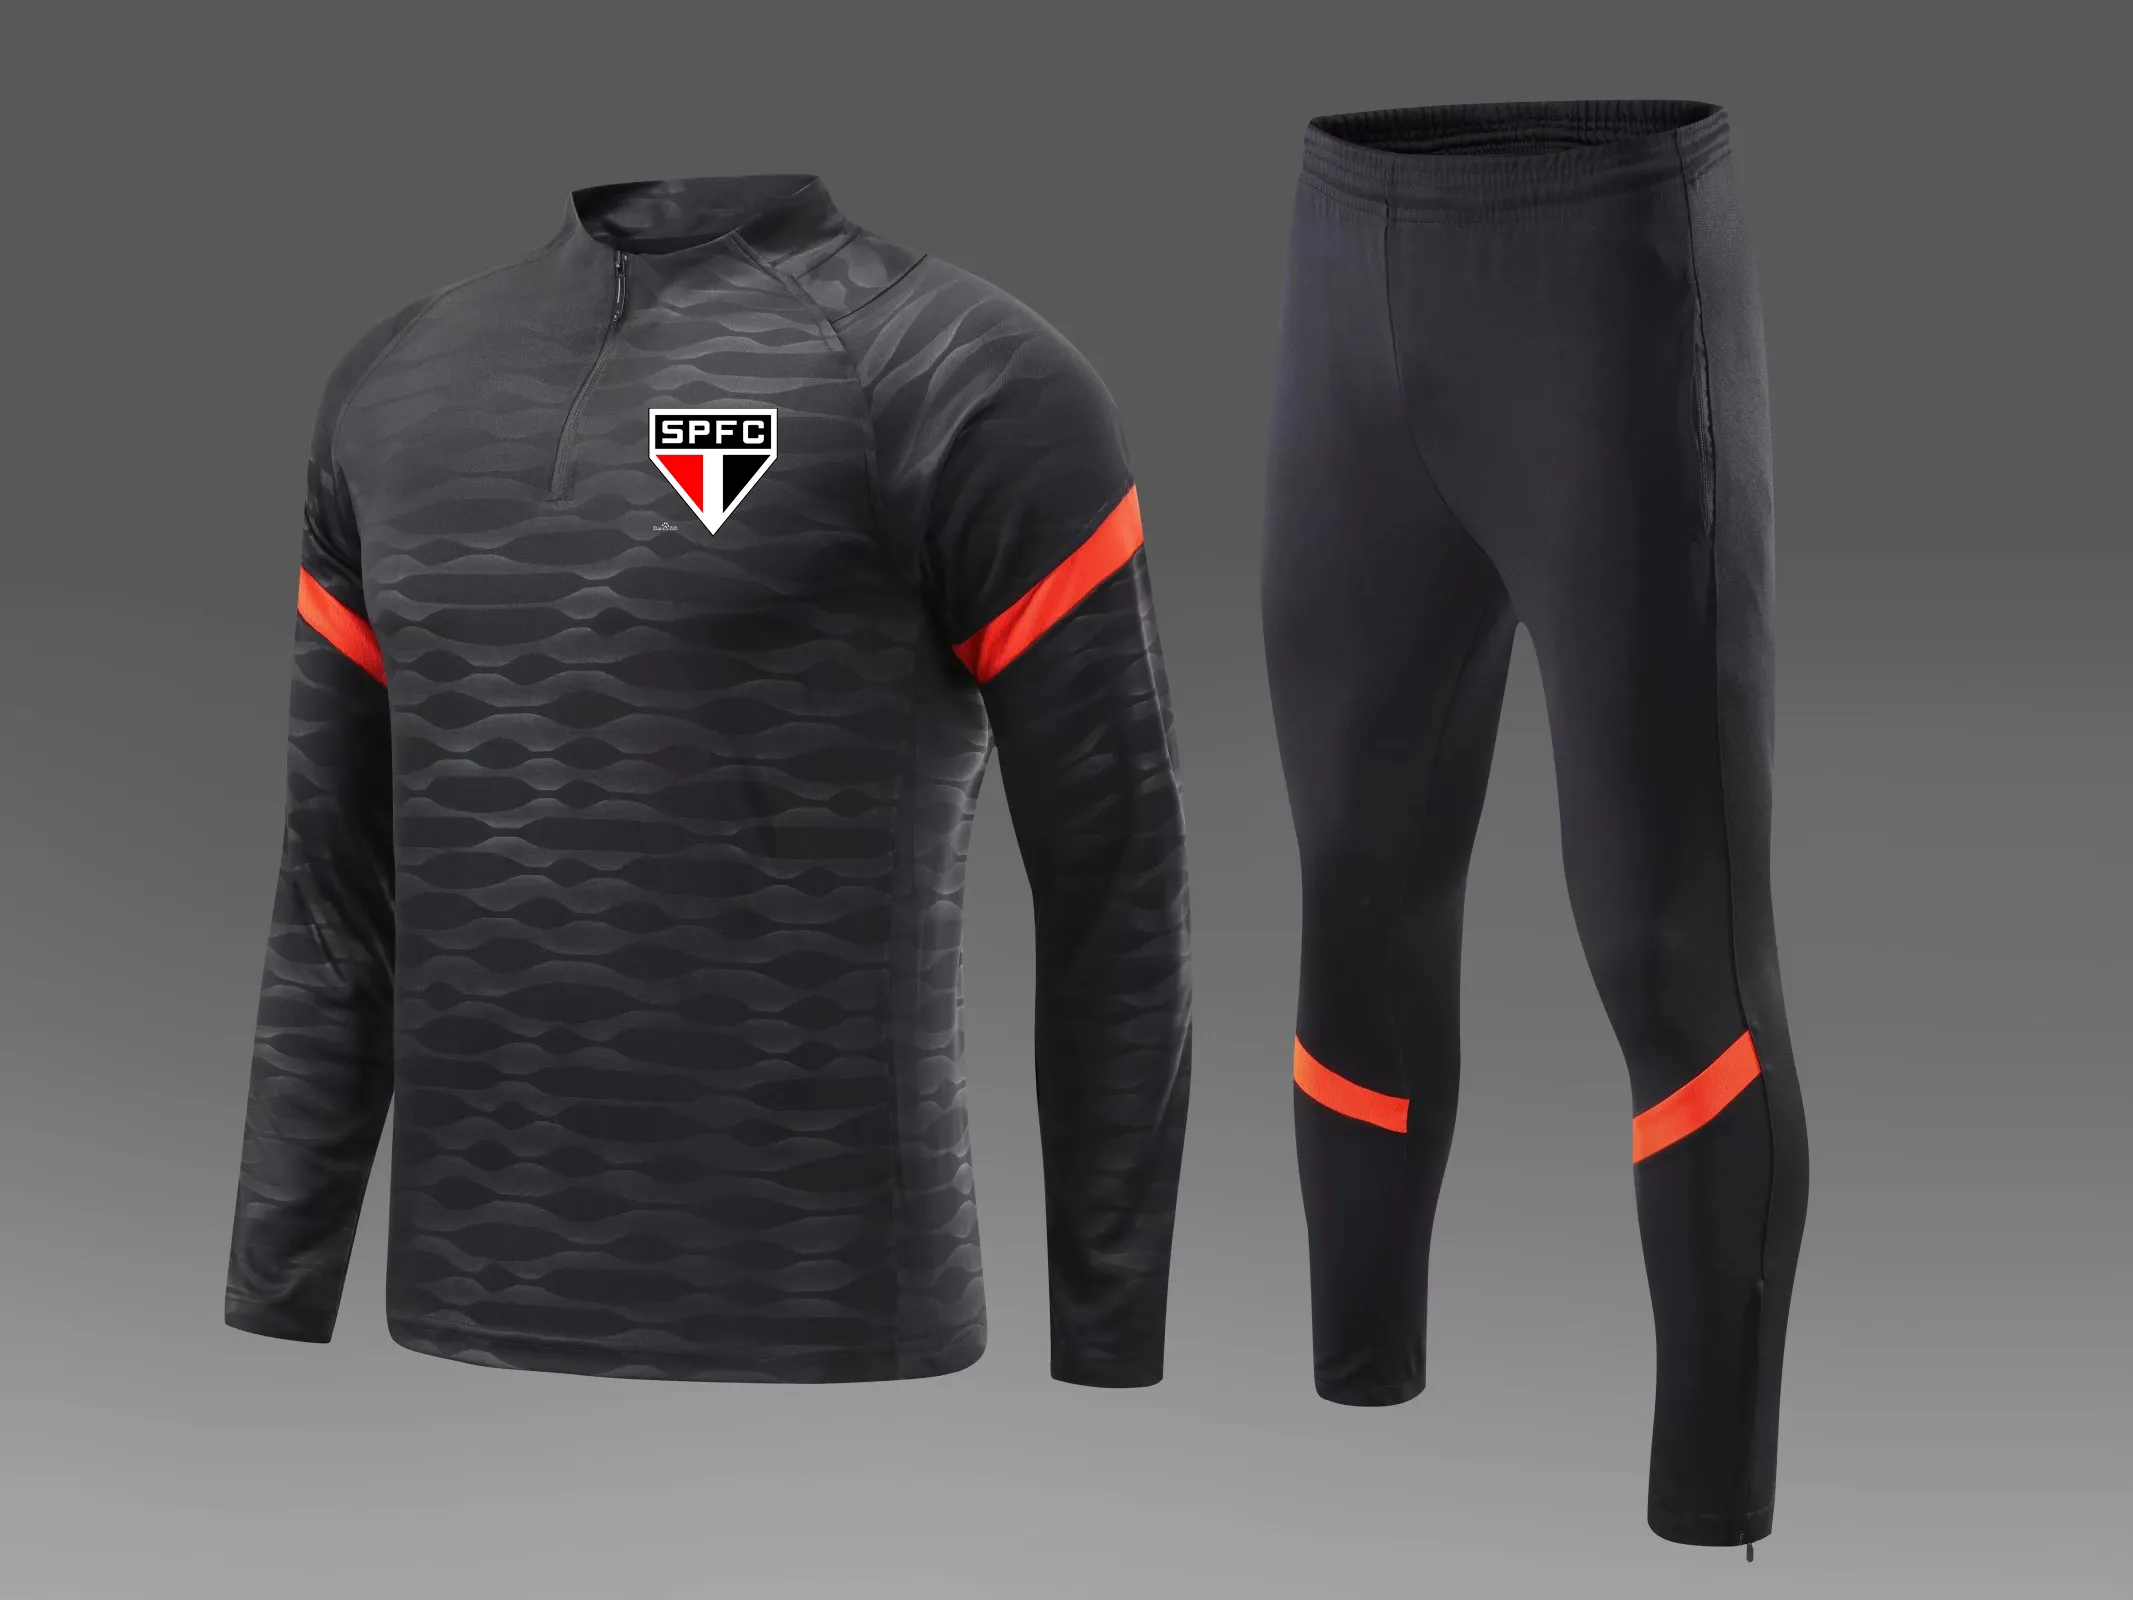 Sao Paulo FC – survêtements pour hommes, combinaison de sport de plein air, kits de maison pour enfants, automne et hiver, sweat-shirt décontracté, taille 12-2XL